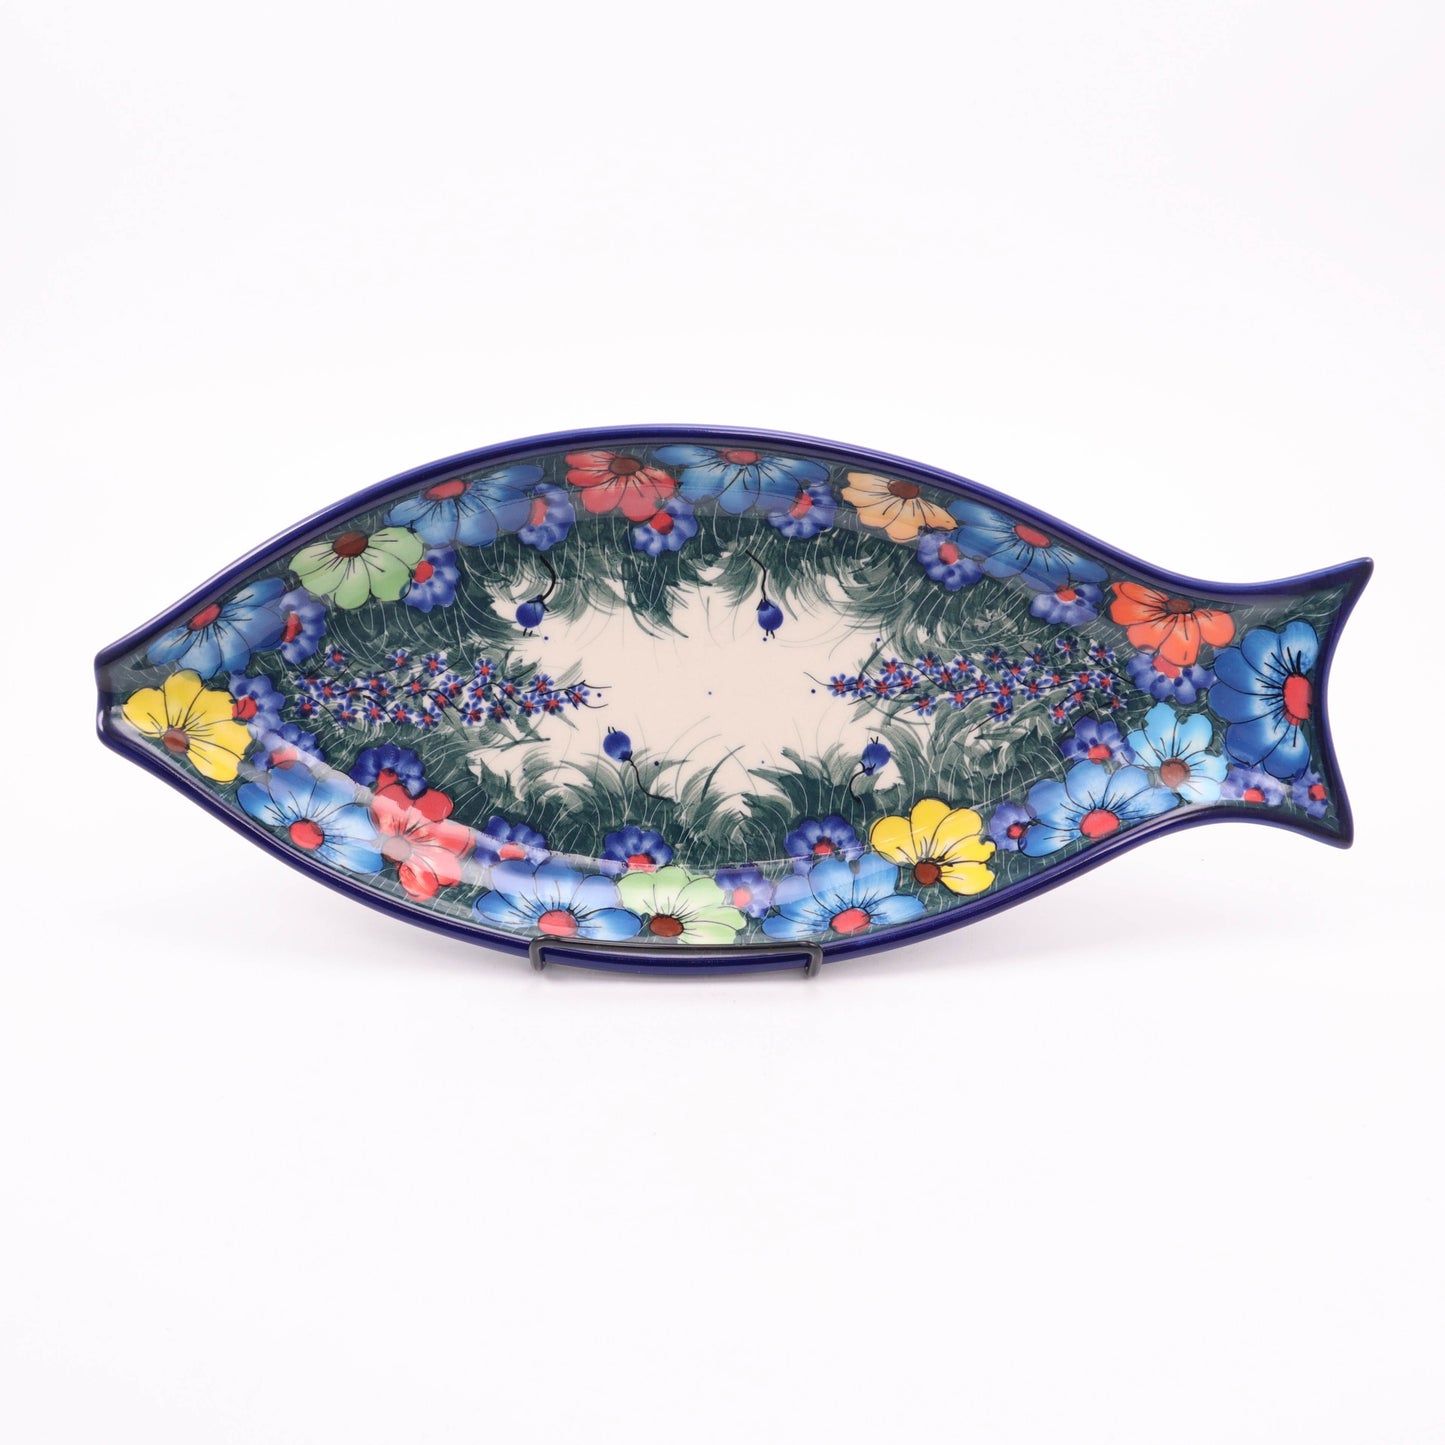 14"x7" Fish Platter. Pattern: Brite Bouquet